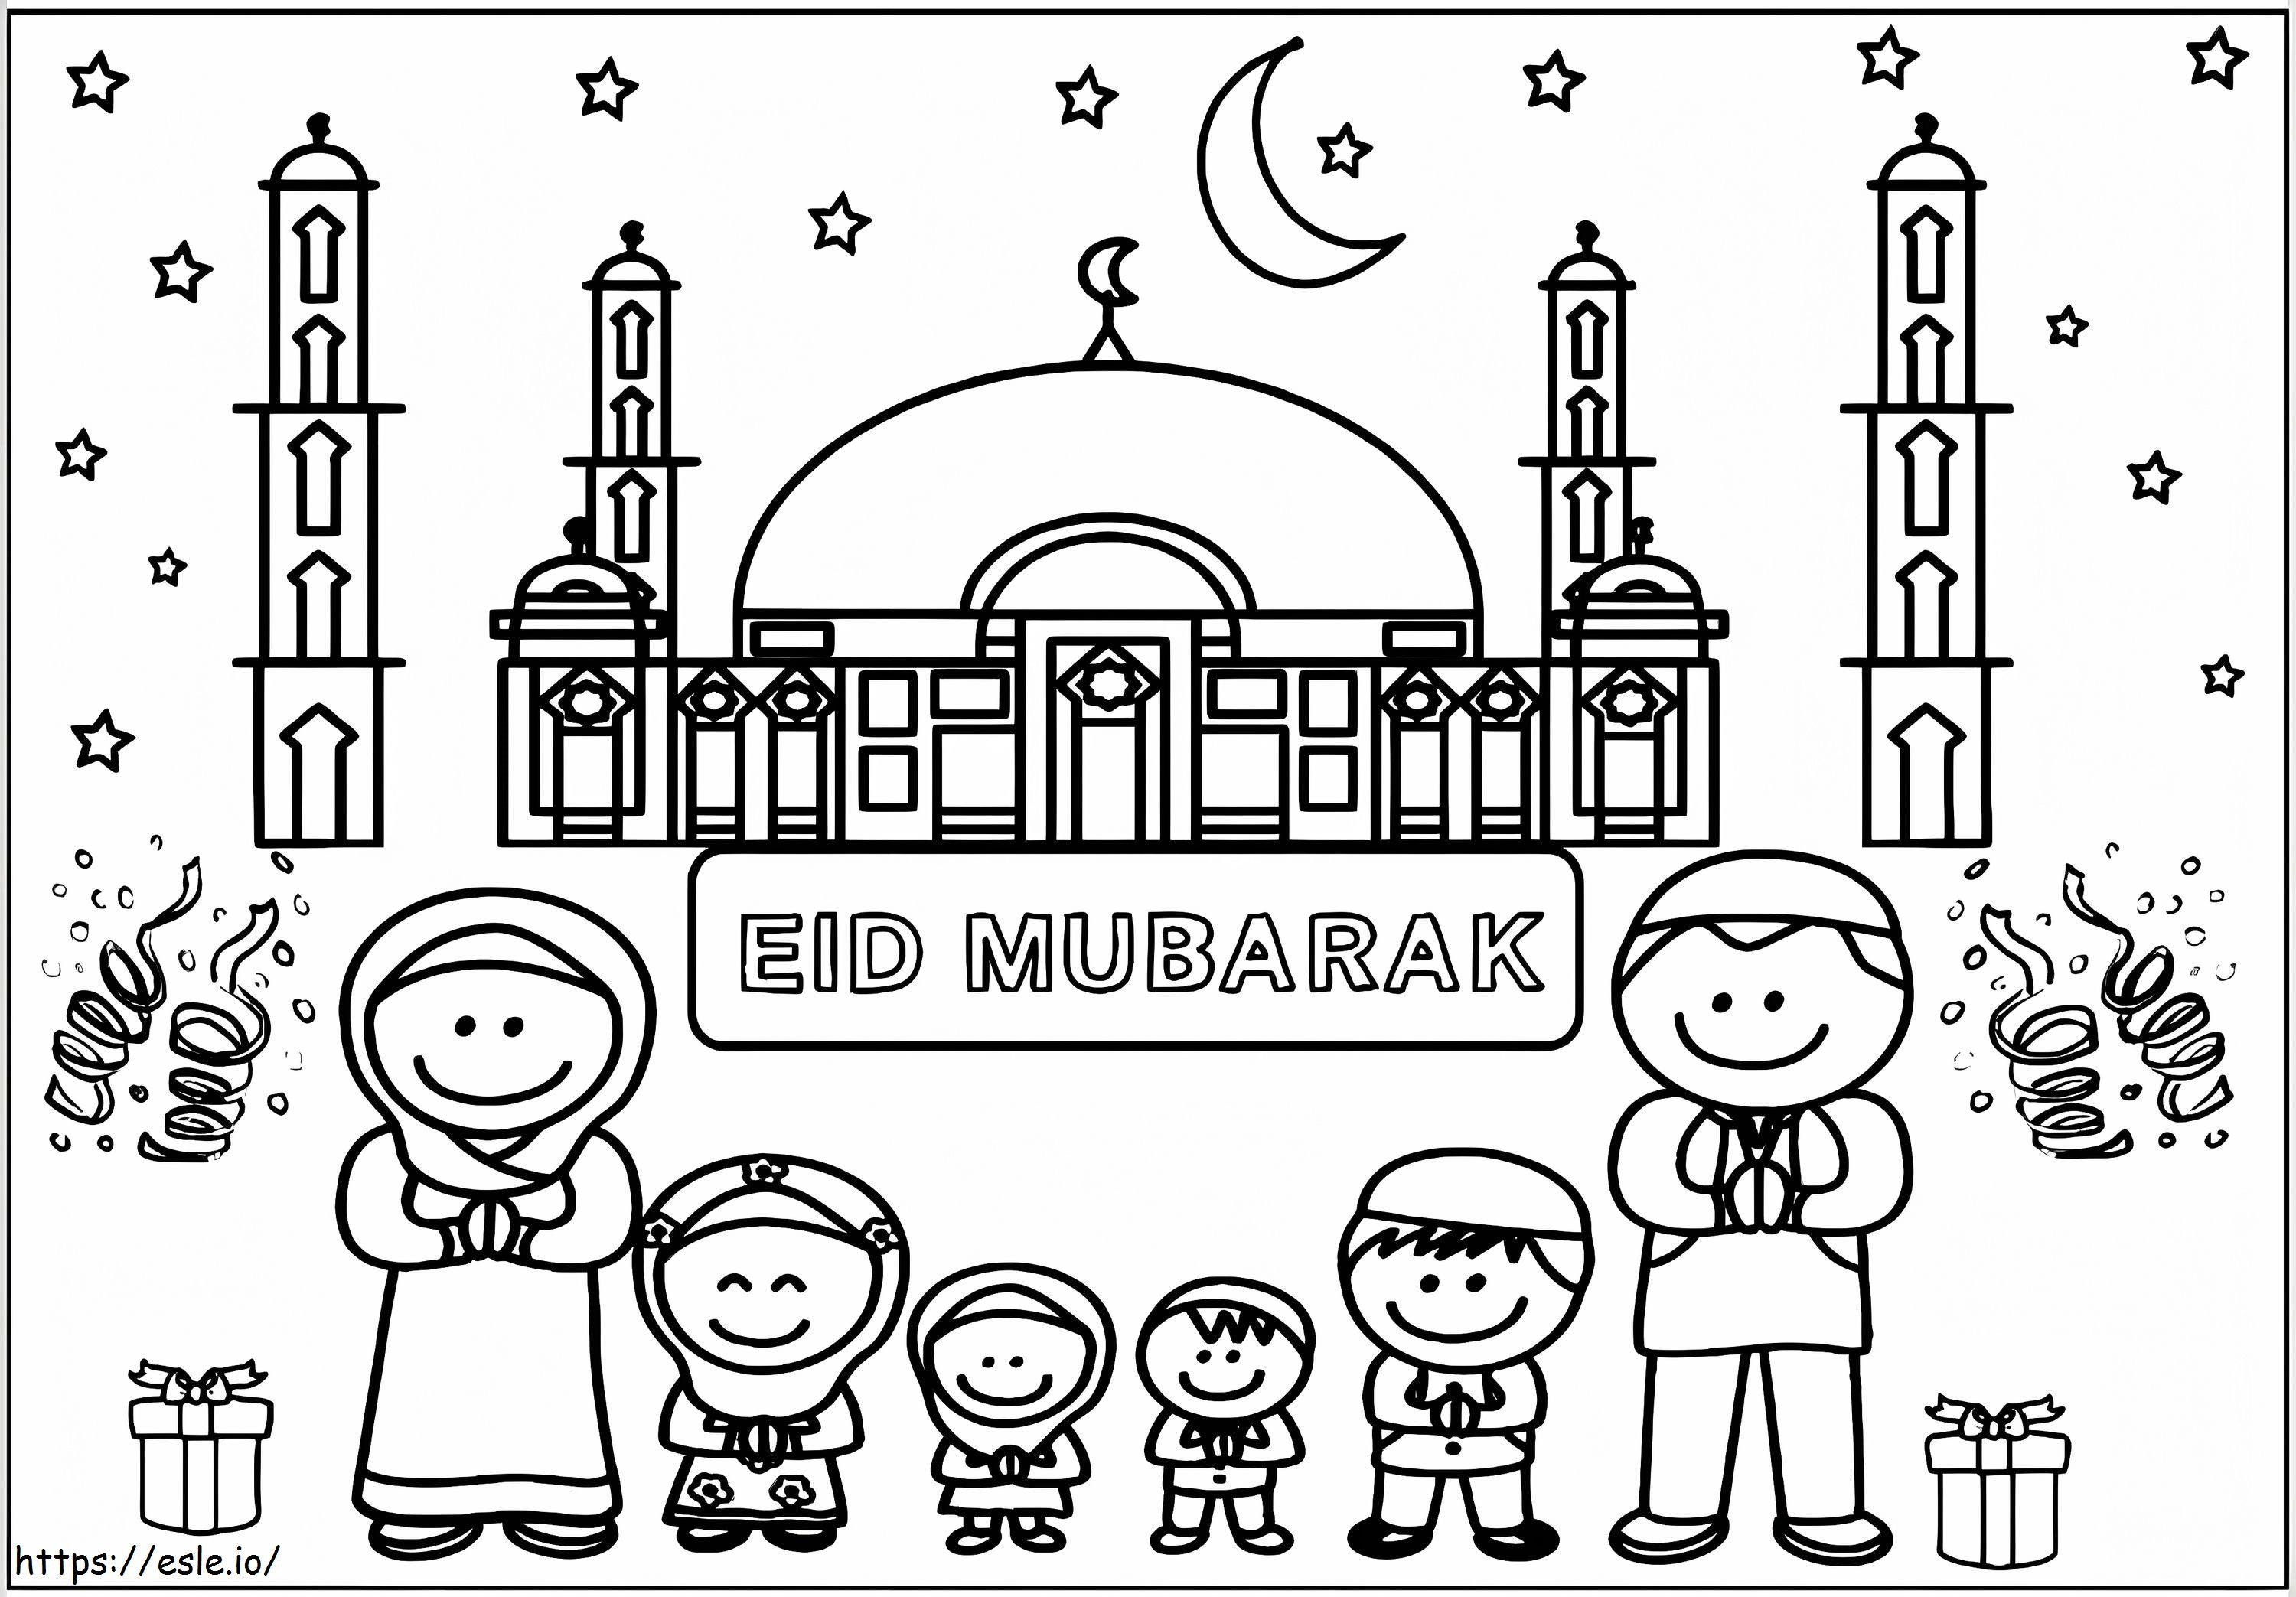 Eid al-Fitr 4 kolorowanka